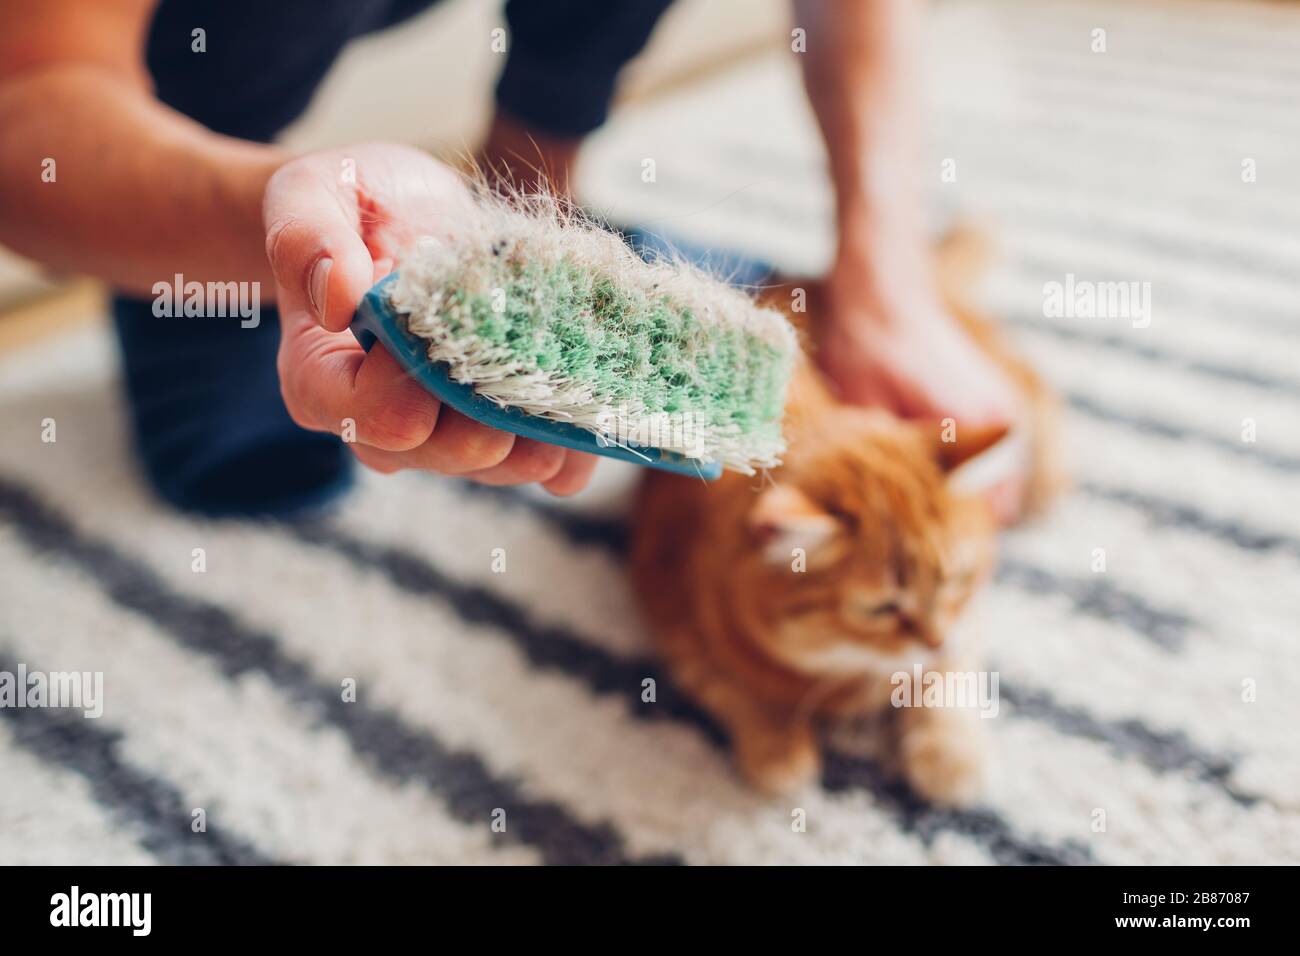 Nettoyer la moquette des cheveux de chat avec la brosse à la maison. L'homme nettoie le tapis sale de la fourrure d'animal. Entretien ménager. Allergie Banque D'Images